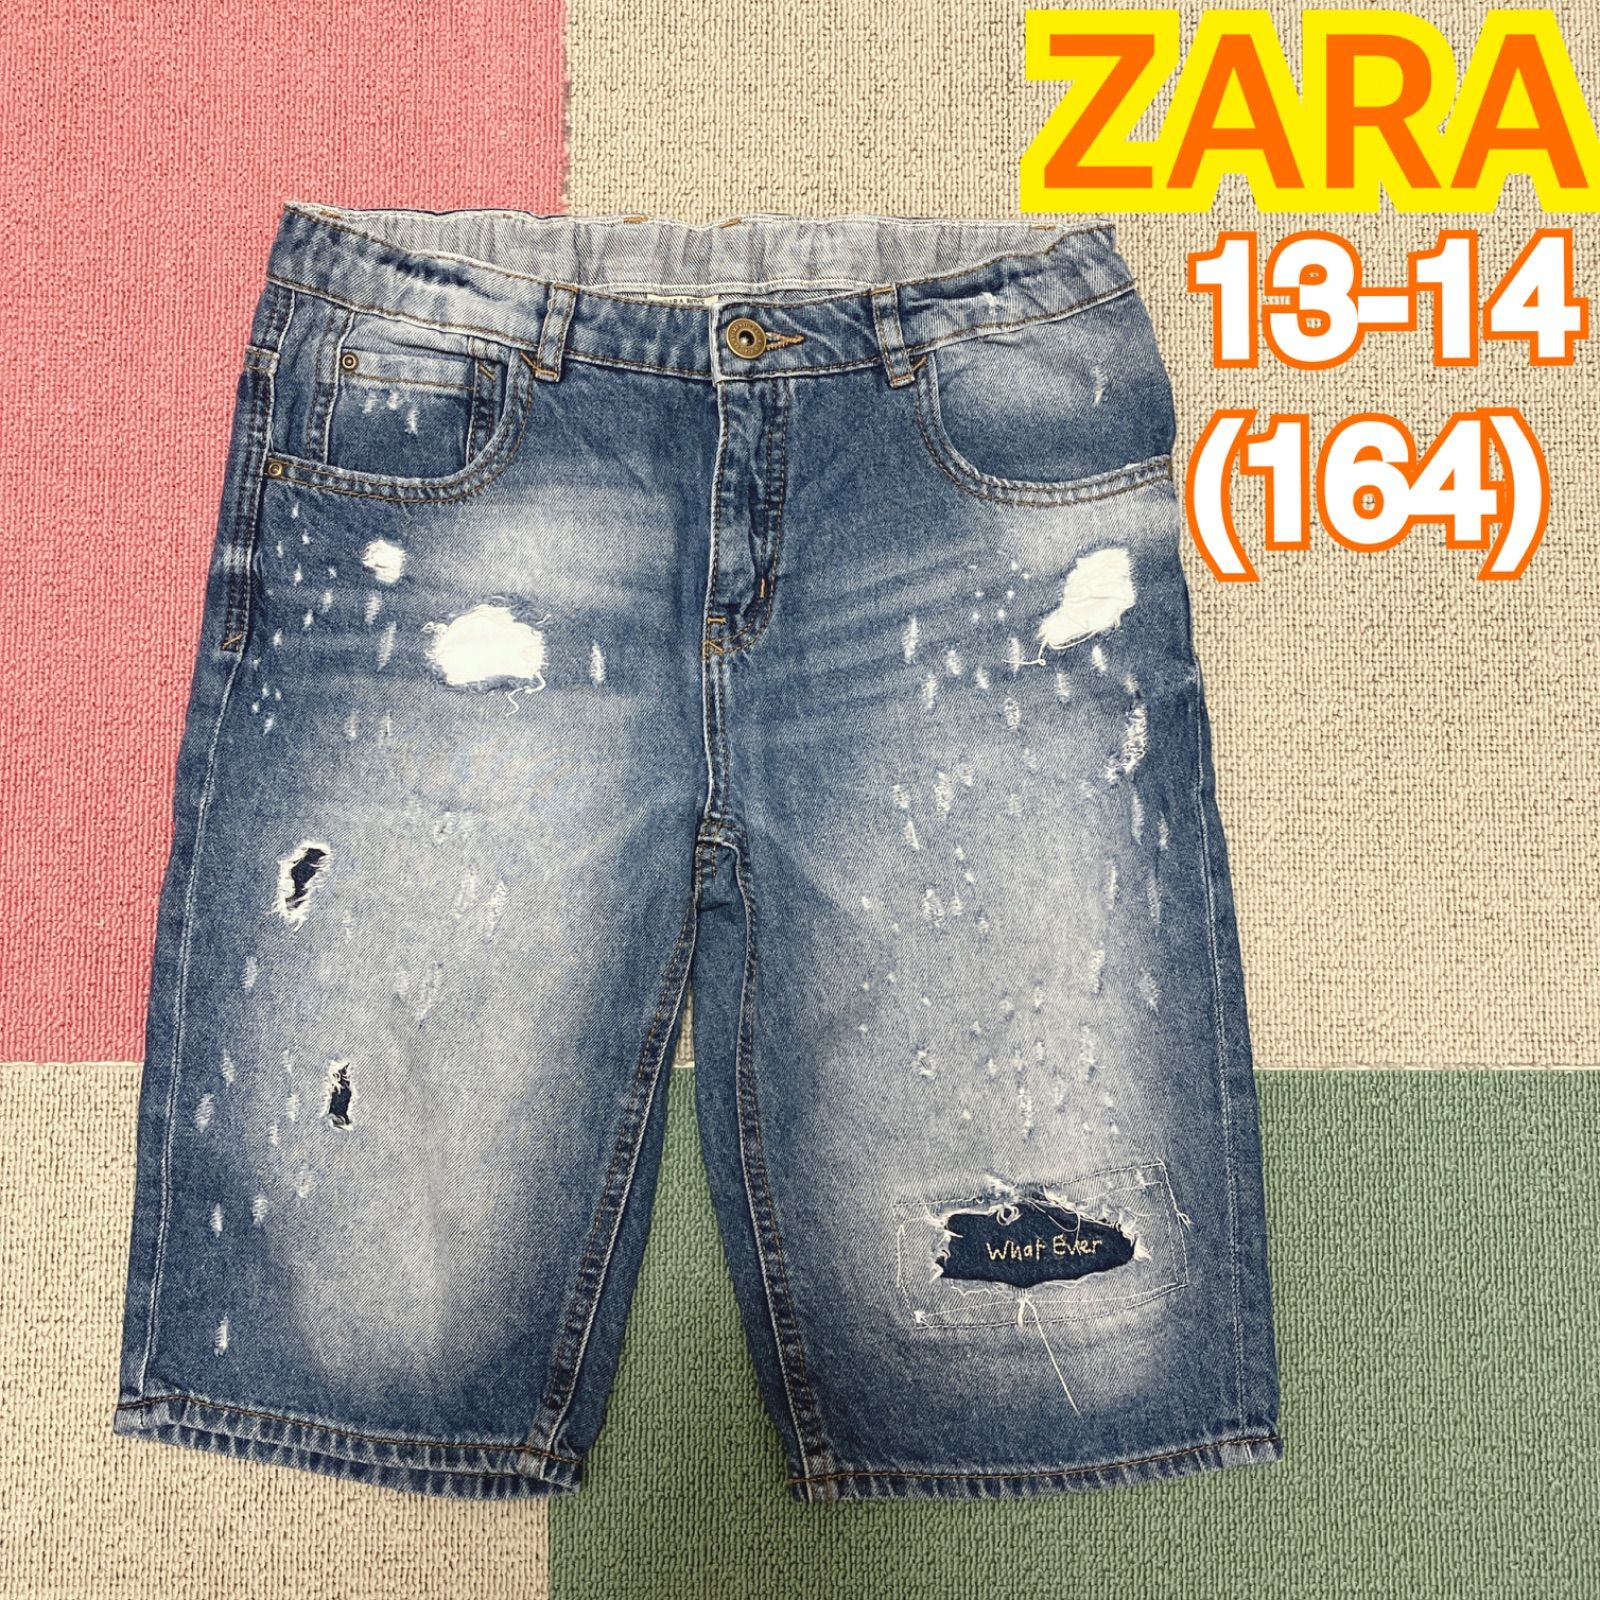 ZARA ザラ パンツ 80cm 90cm - パンツ